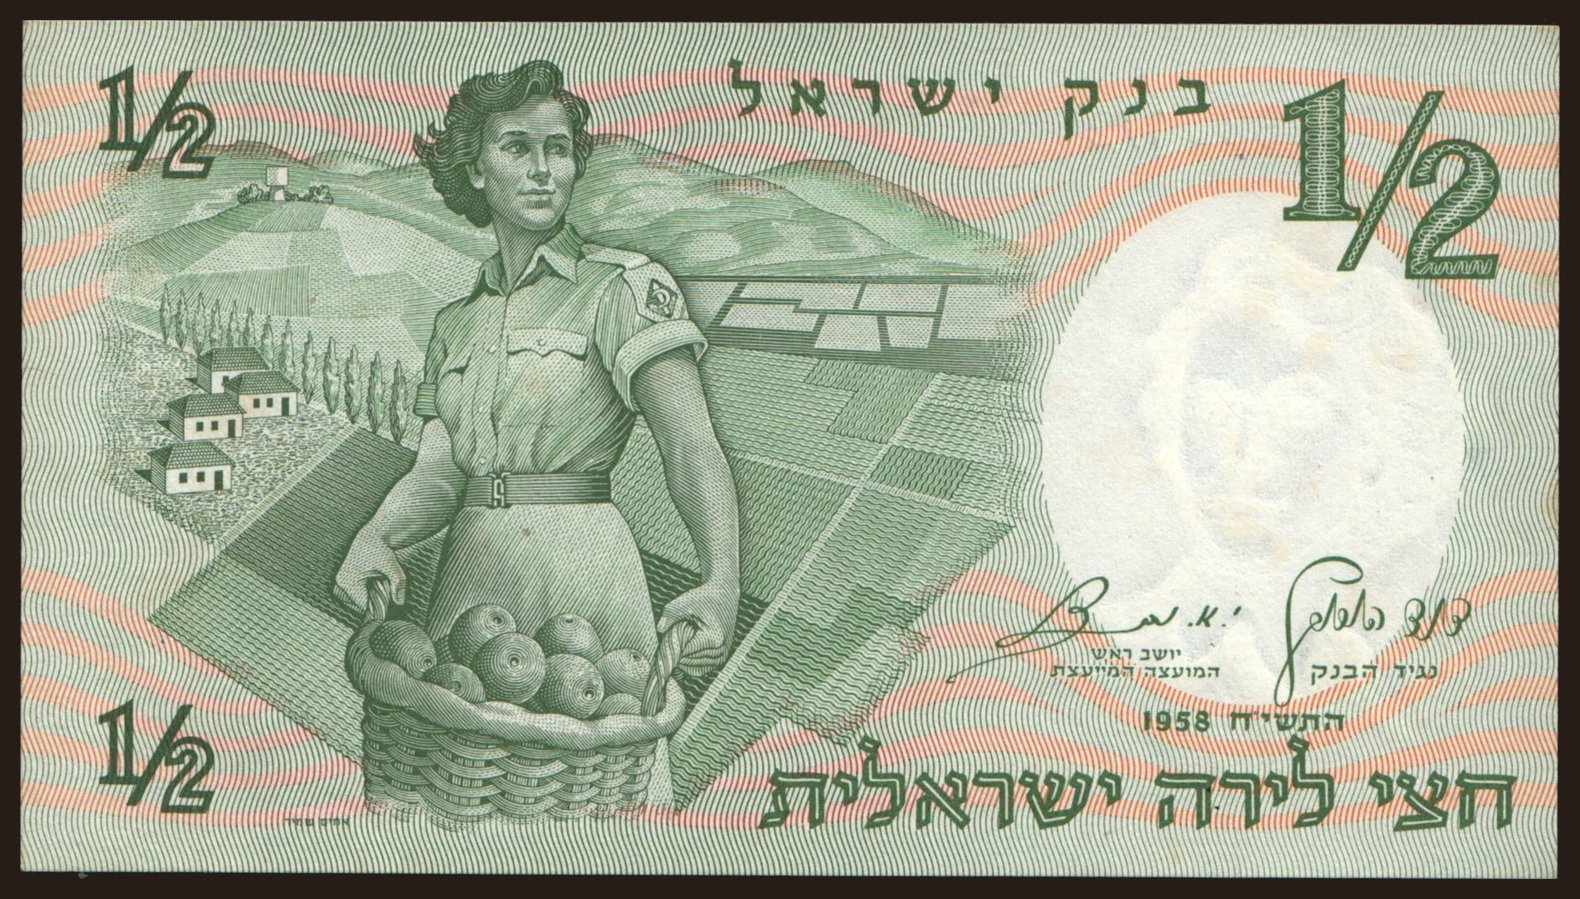 1/2 lira, 1958